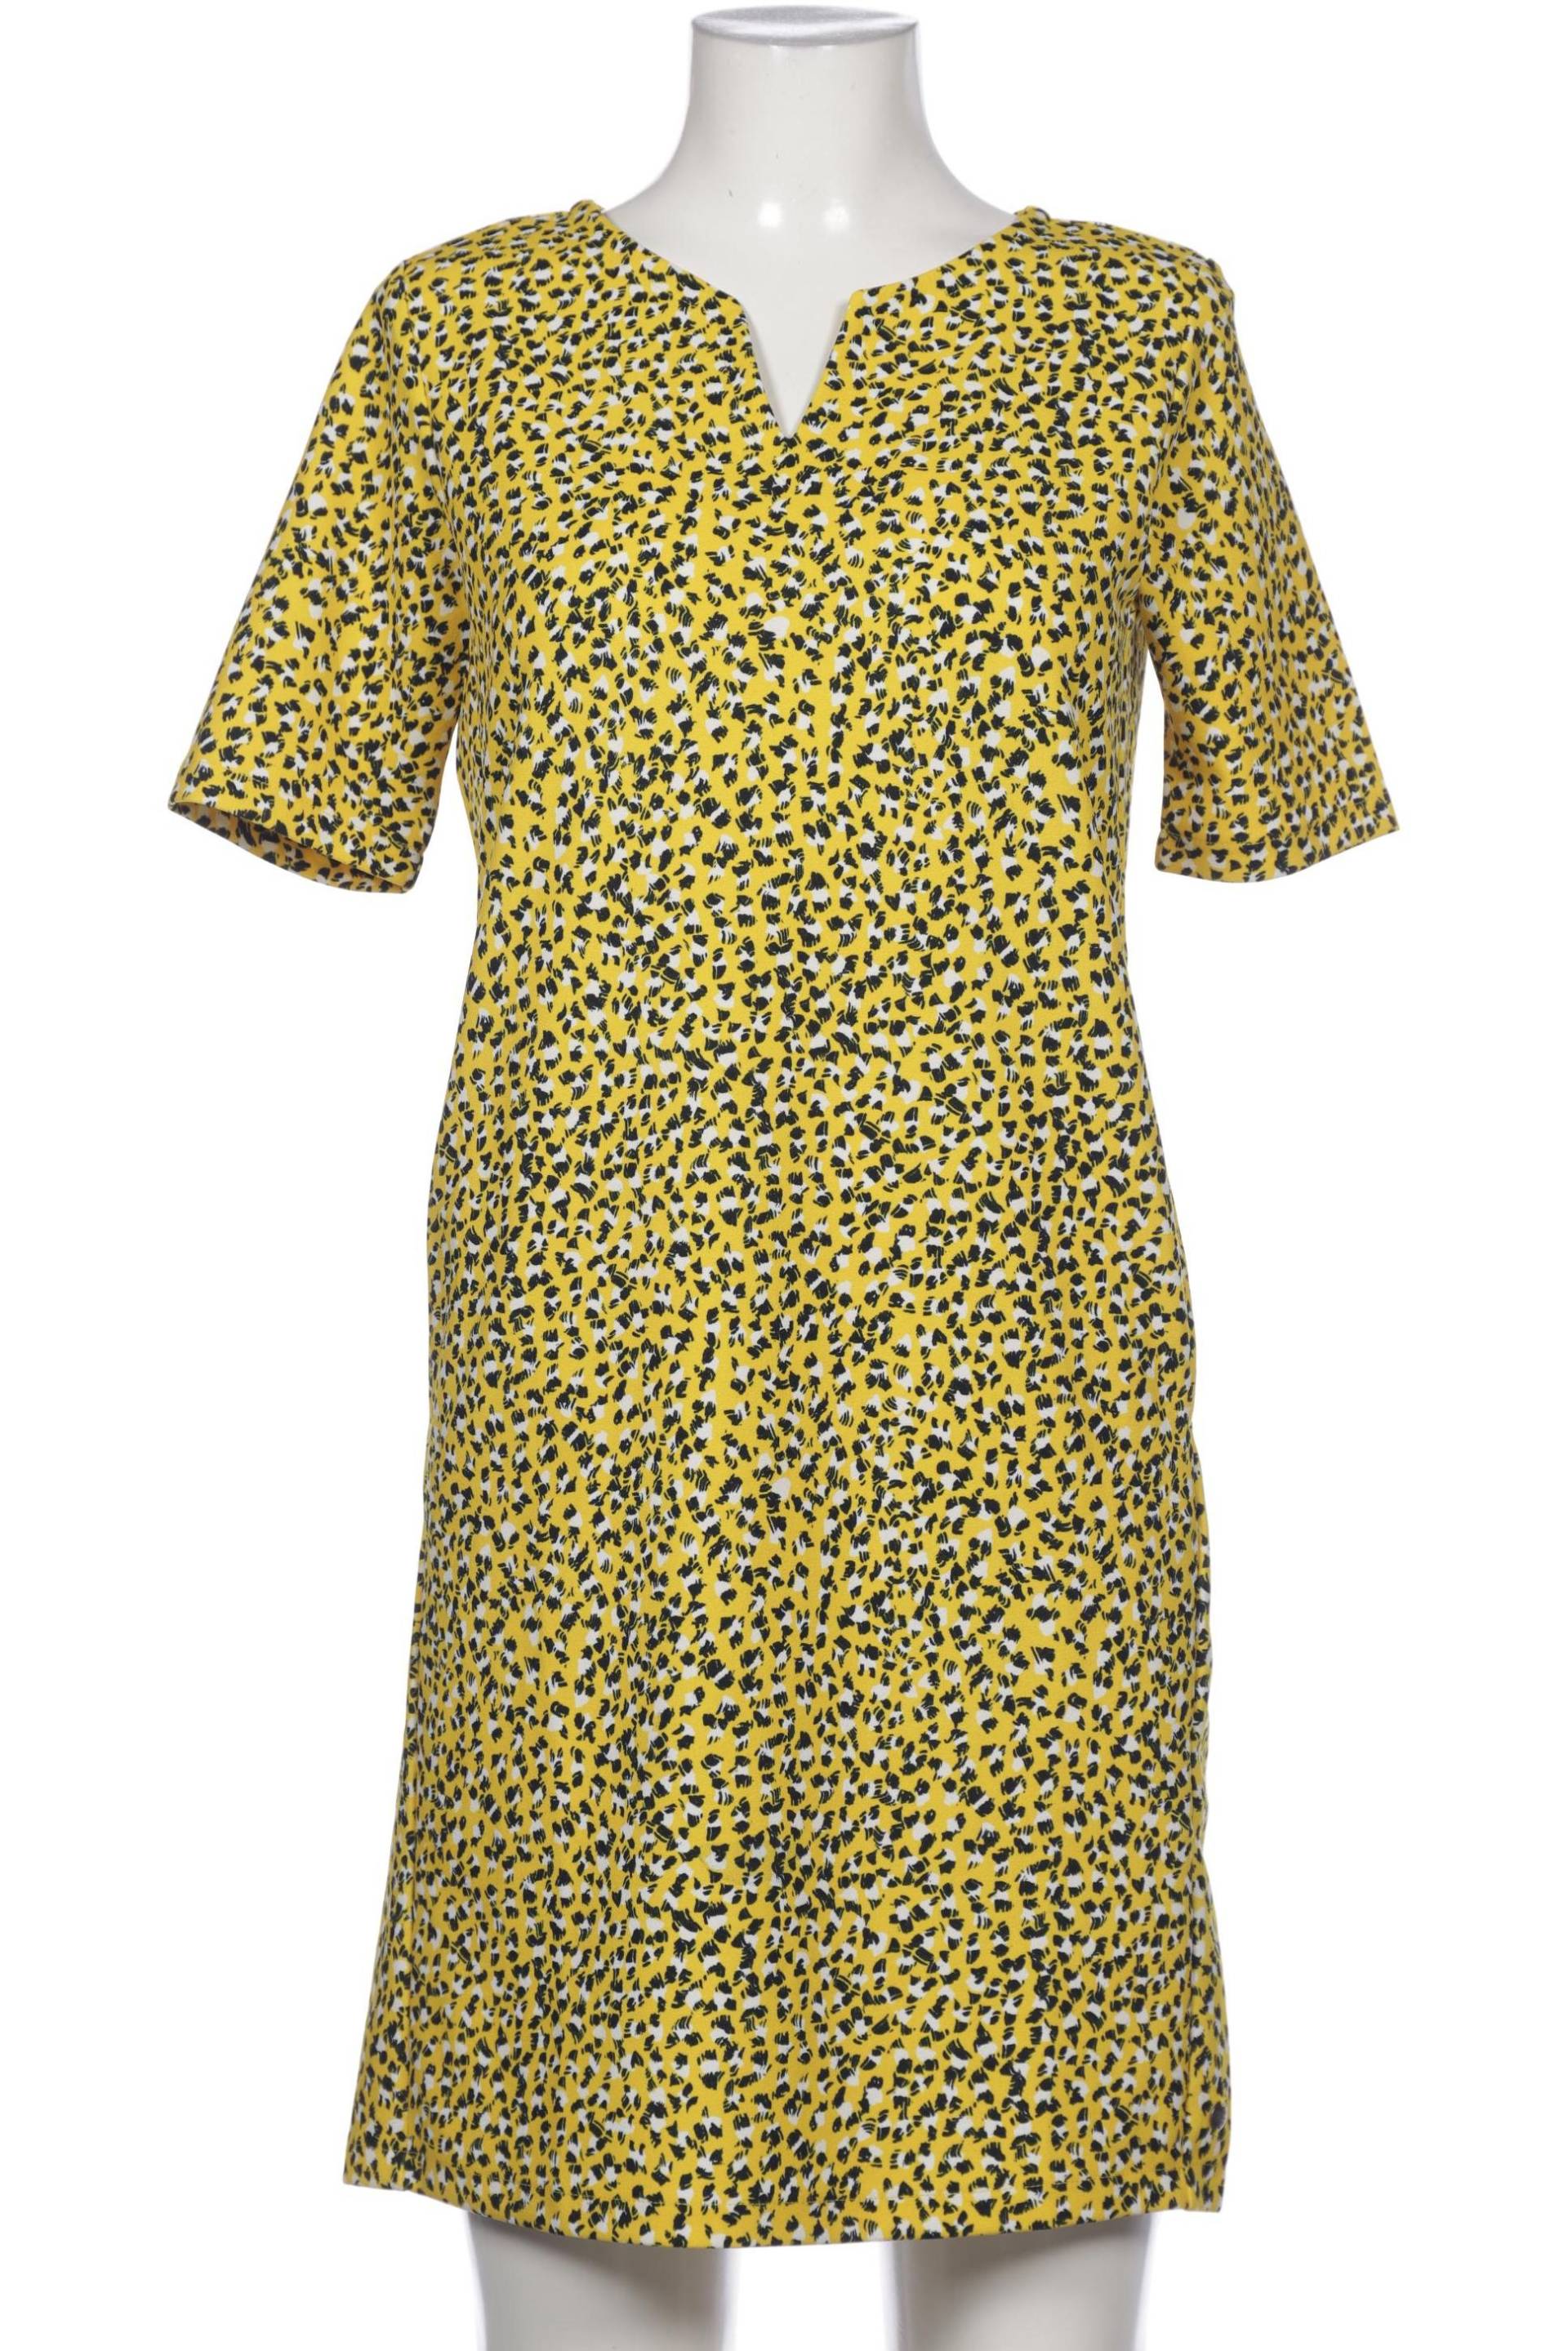 Garcia Damen Kleid, gelb, Gr. 36 von GARCIA